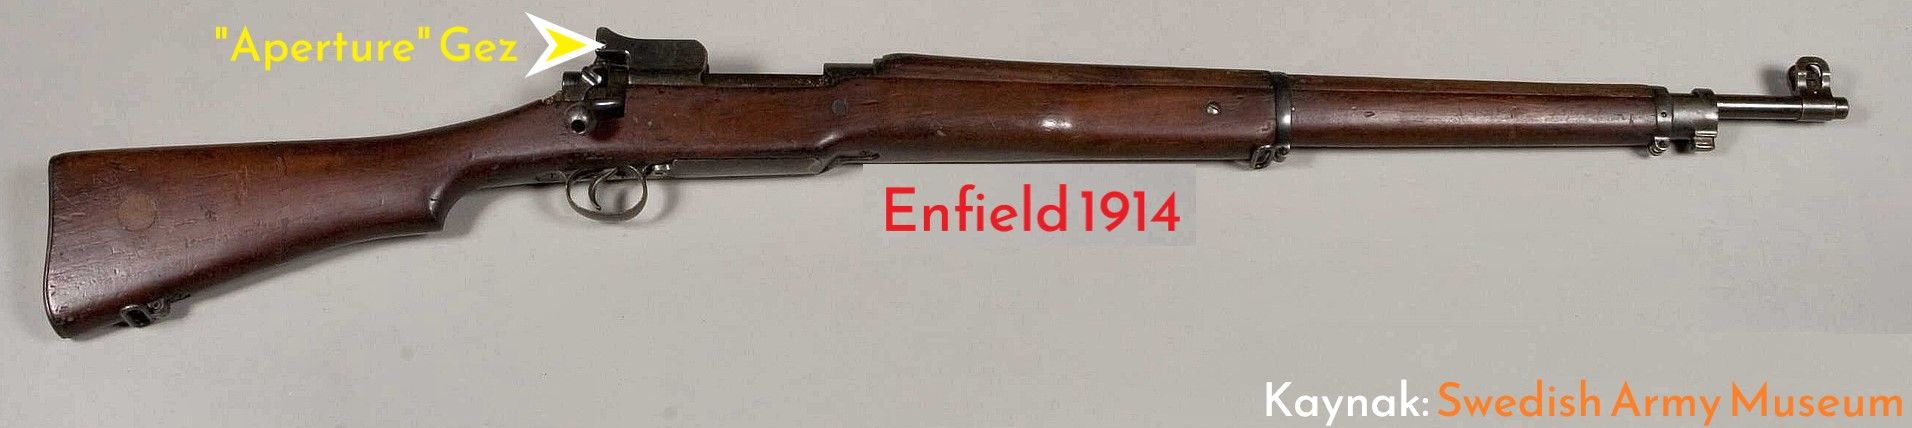 Enfield 1914 ✓.jpg